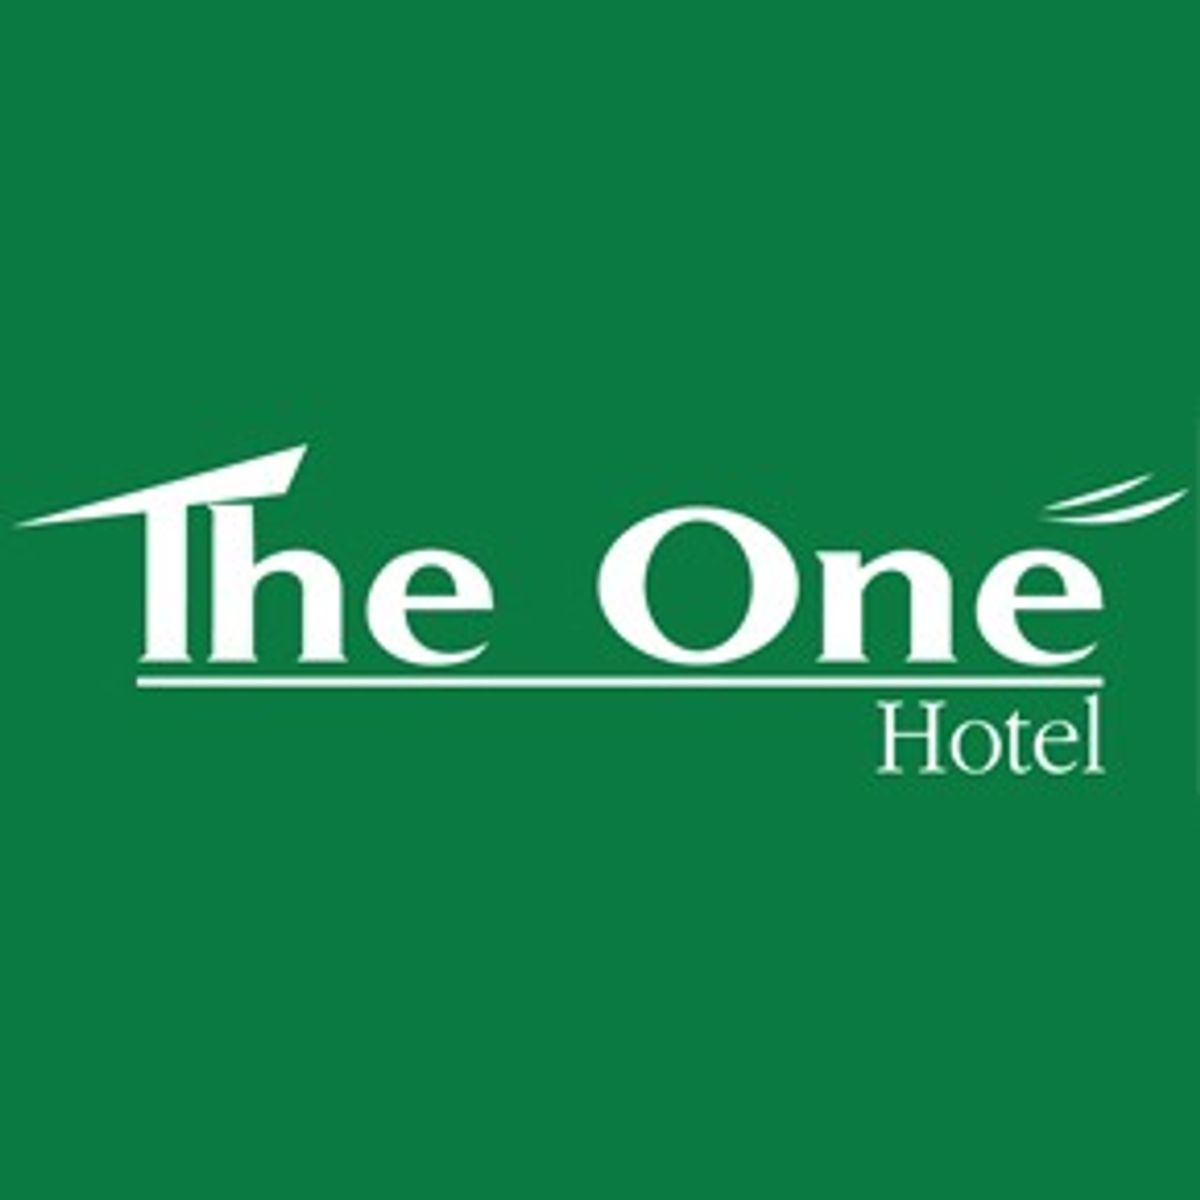 โปรโมชั่น ส่วนลด The One Hotel โรงแรม เดอะวัน บึงกาฬ อัพเดท มิถุนายน 2023 -  Sale Here